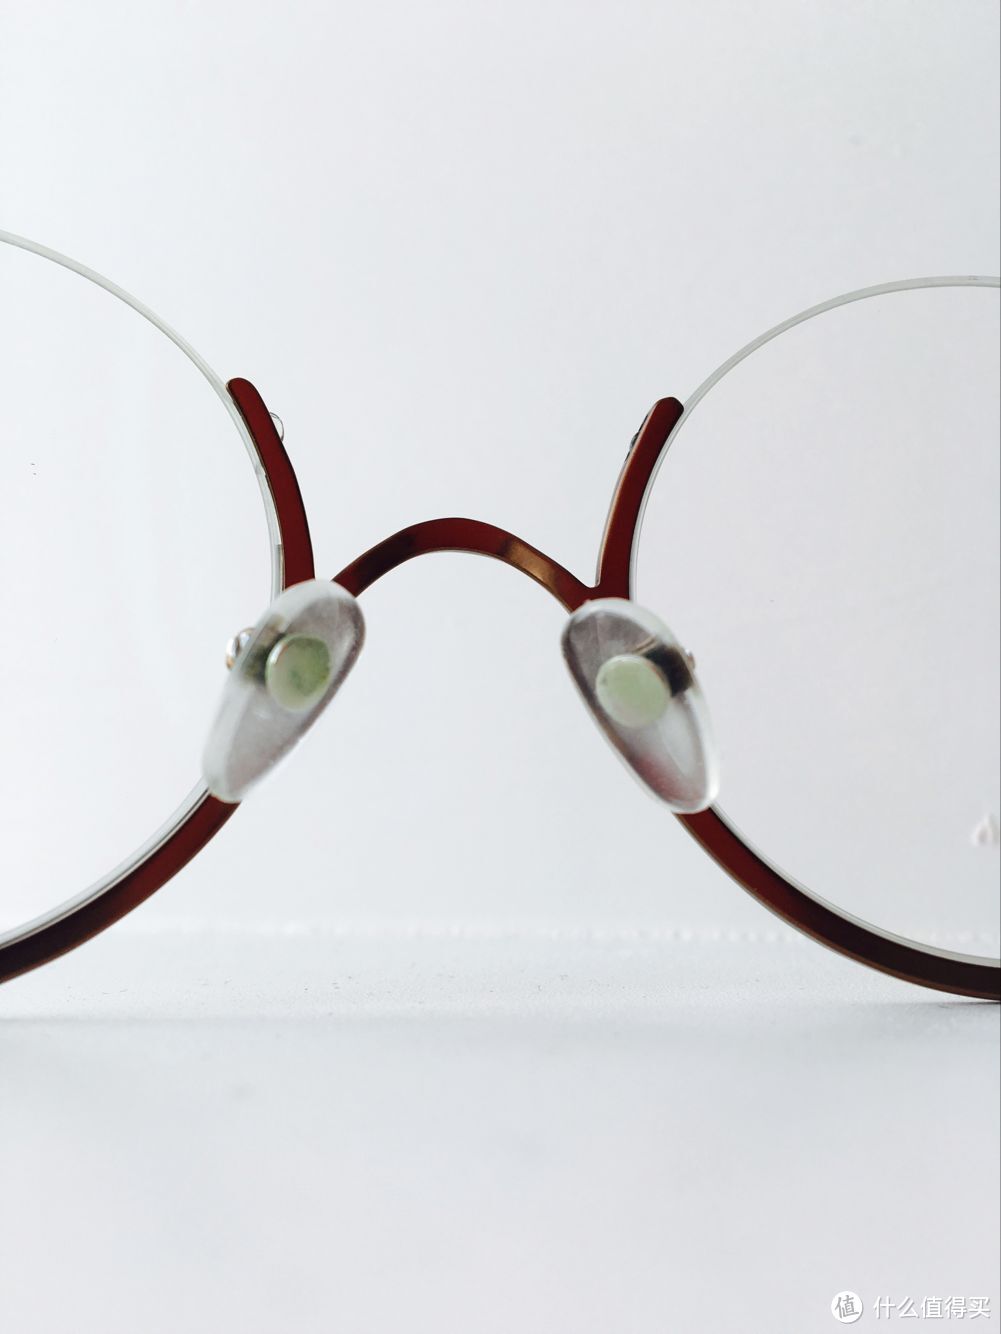 #原创新人#Tapole ——分享我入手的两副眼镜 第80作品 Imagine Dragons 第10作品 Cio-Cio San